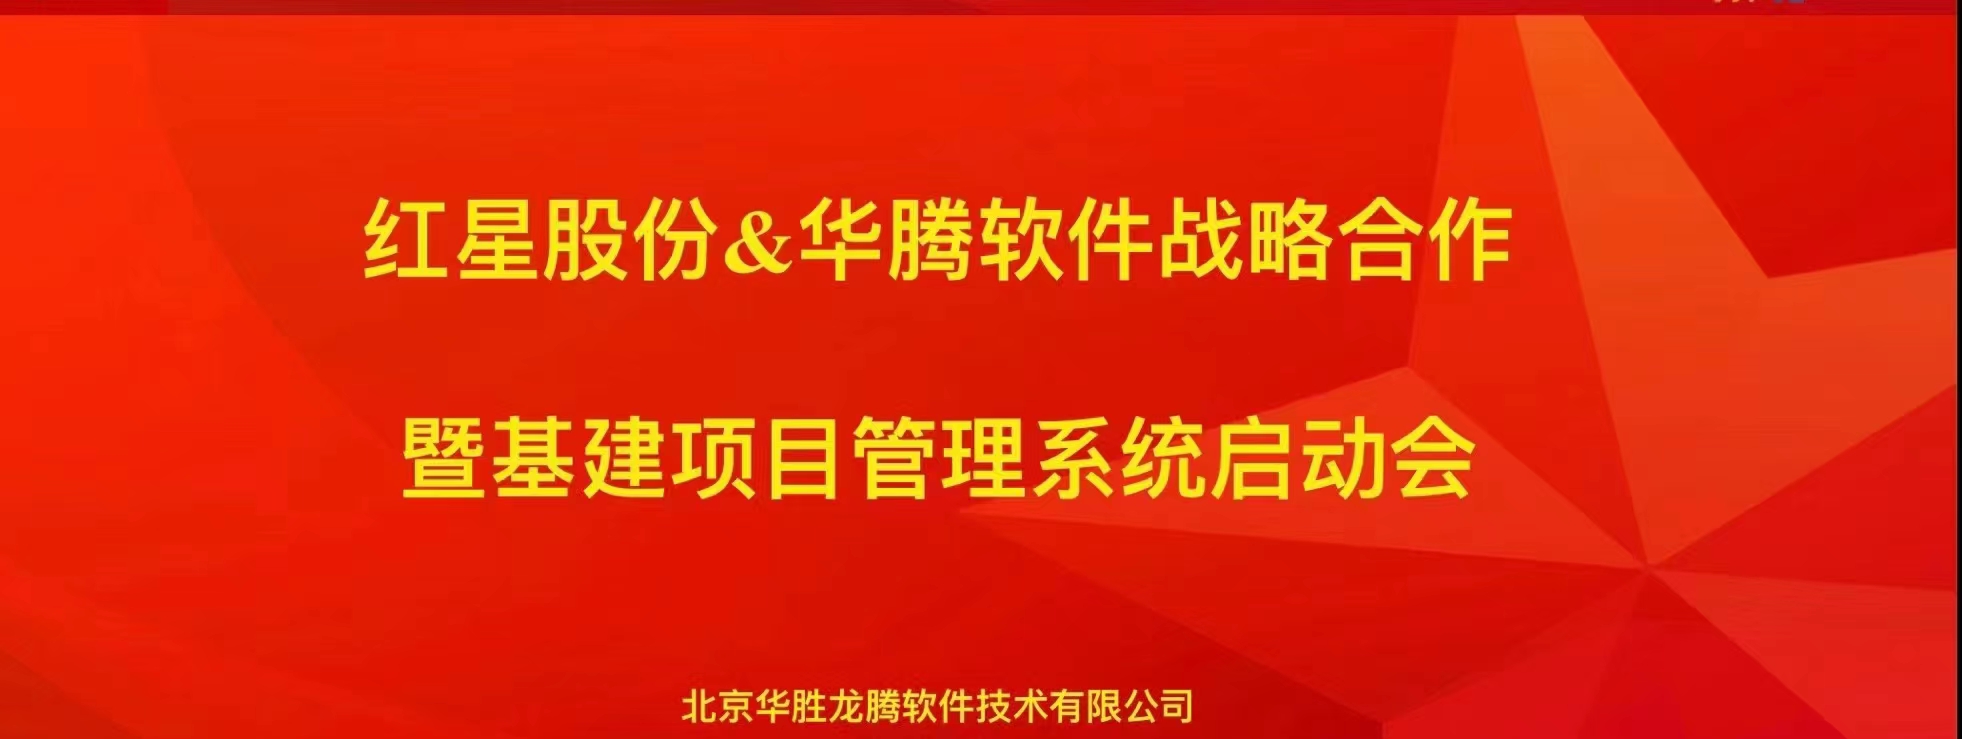 华腾软件携手北京红星股份构建高效基建项目管理系统